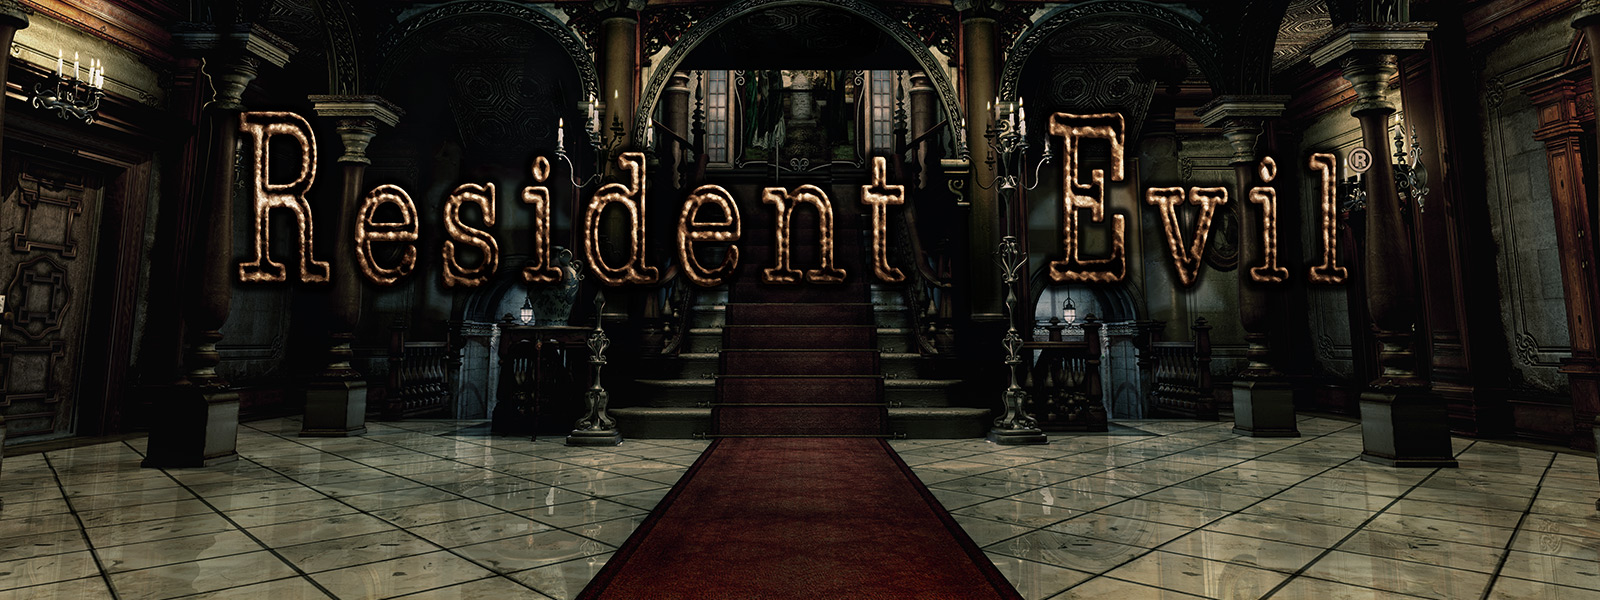 Resident Evil, scéna velkého klenutého vstupu se schody s červeným kobercem